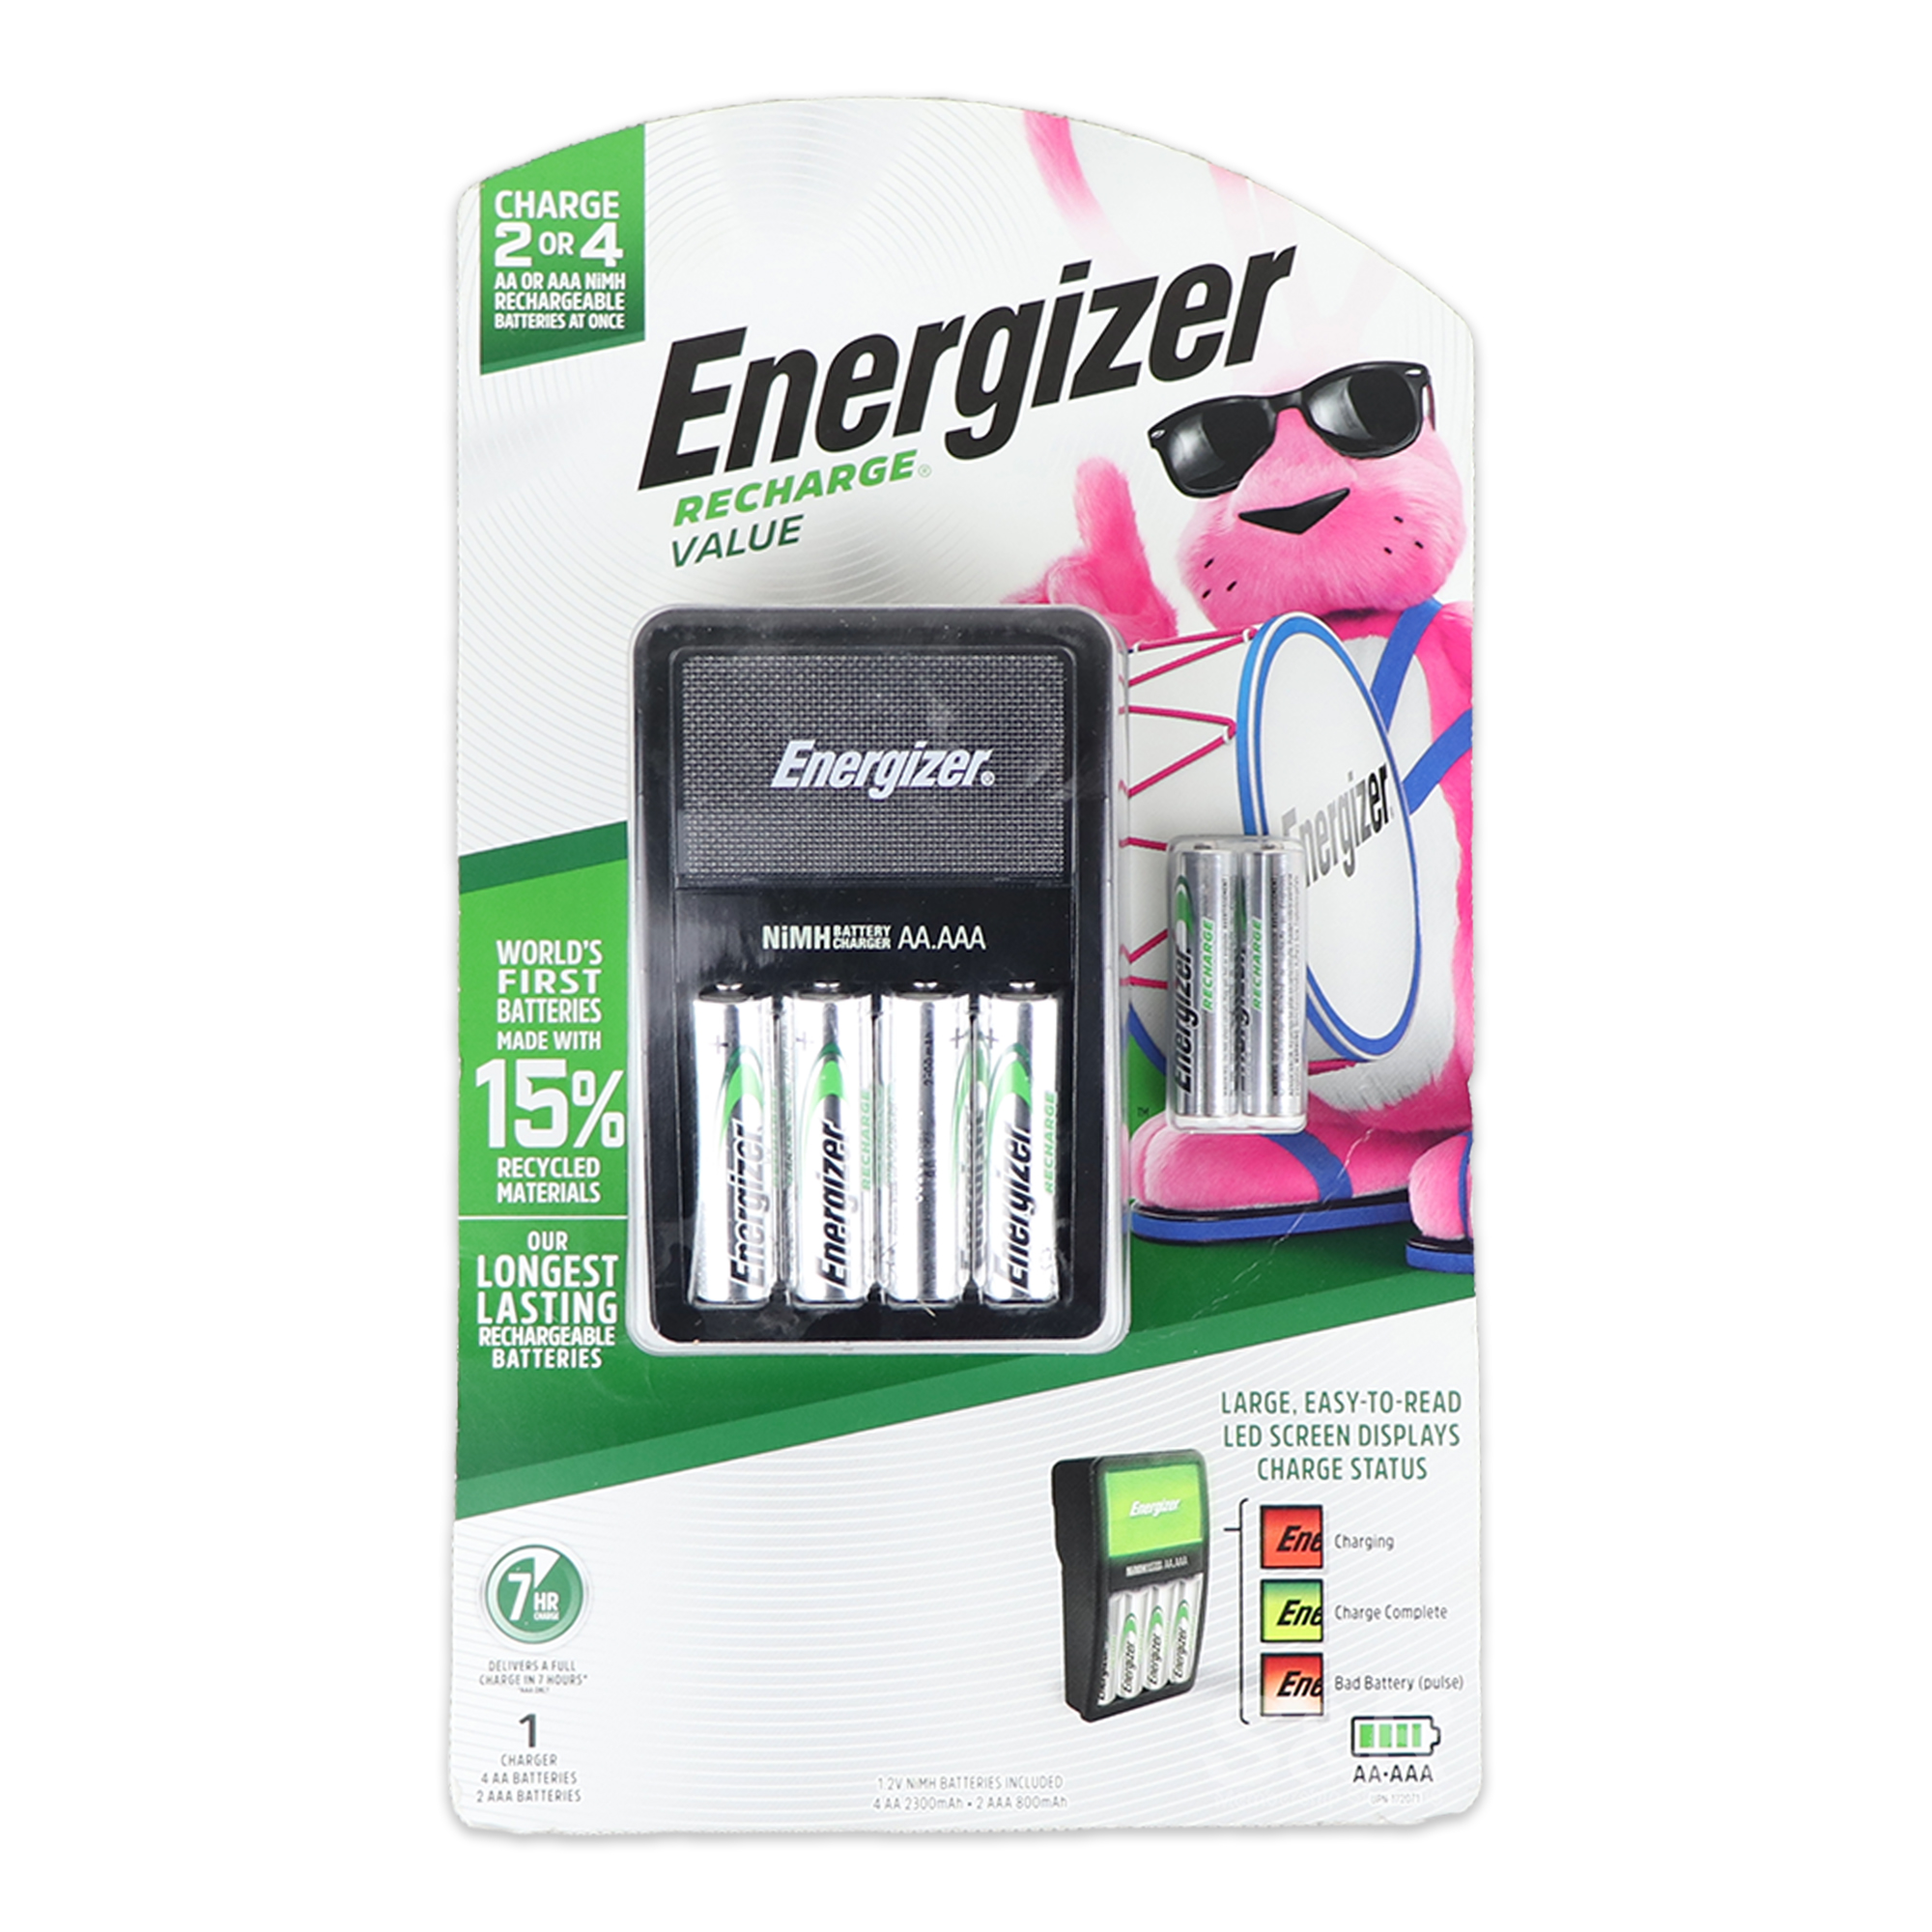 Energizer Rechargeable Batteries 1 set